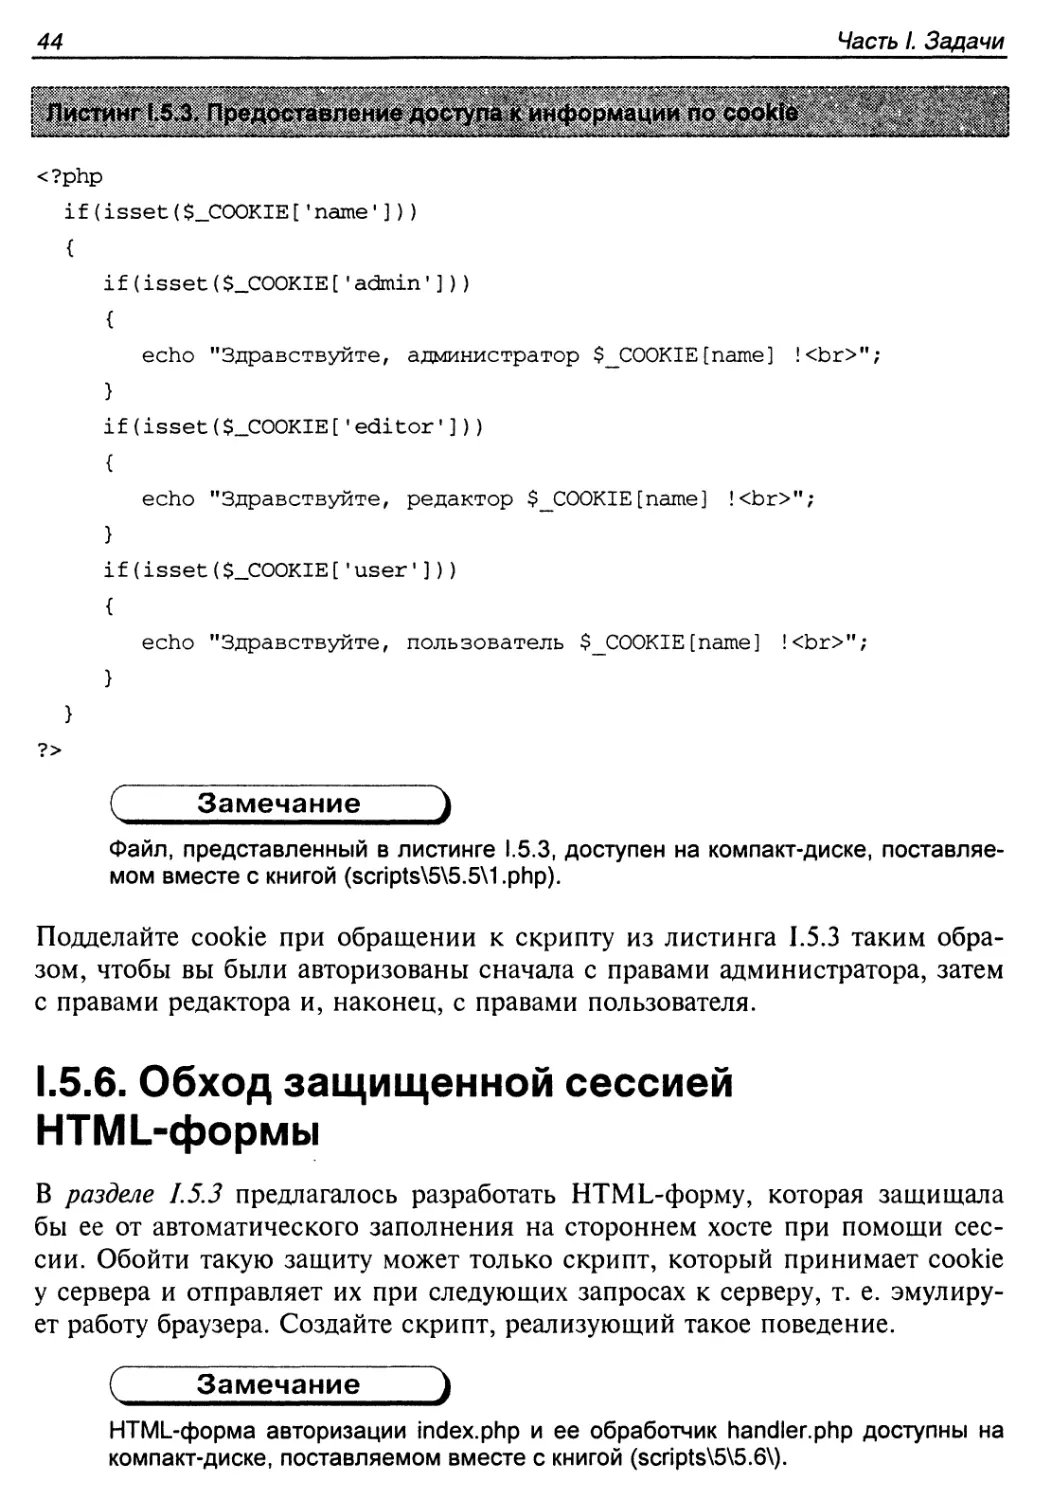 1.5.6. Обход защищенной сессией HTML-формы